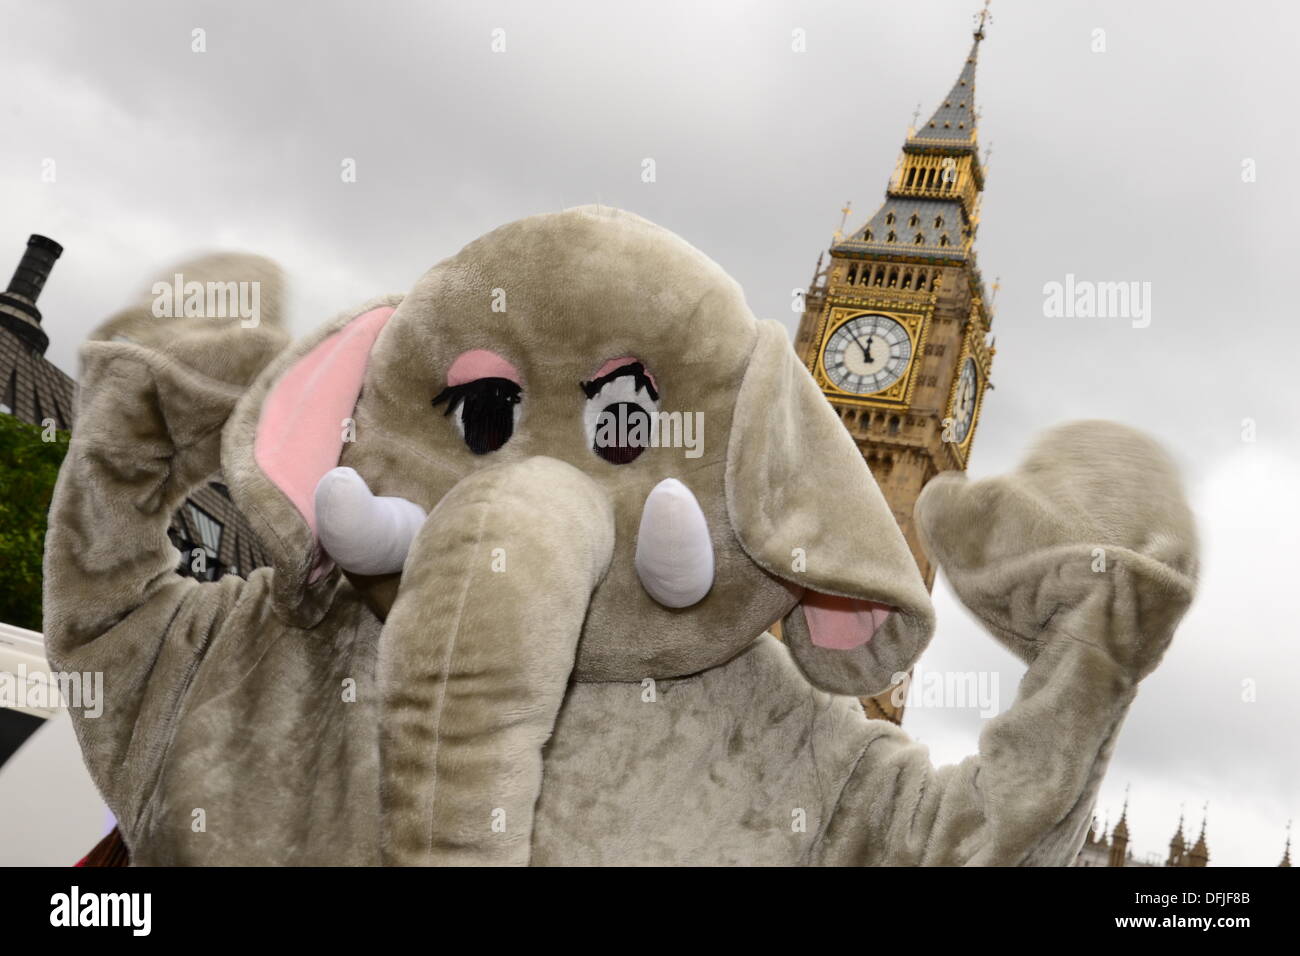 London UK, 4. Oktober 2013: Hunderte von Demonstranten marschieren, Parliament Square, Aufforderung an die Regierung, ein weltweites Verbot von Elfenbein zu unterstützen. Die Demonstranten angesprochen von einem Elefanten getötet alle 15 Minuten um den illegalen Handel mit Elfenbein zu versorgen. Siehe Li / Alamy Live News Stockfoto